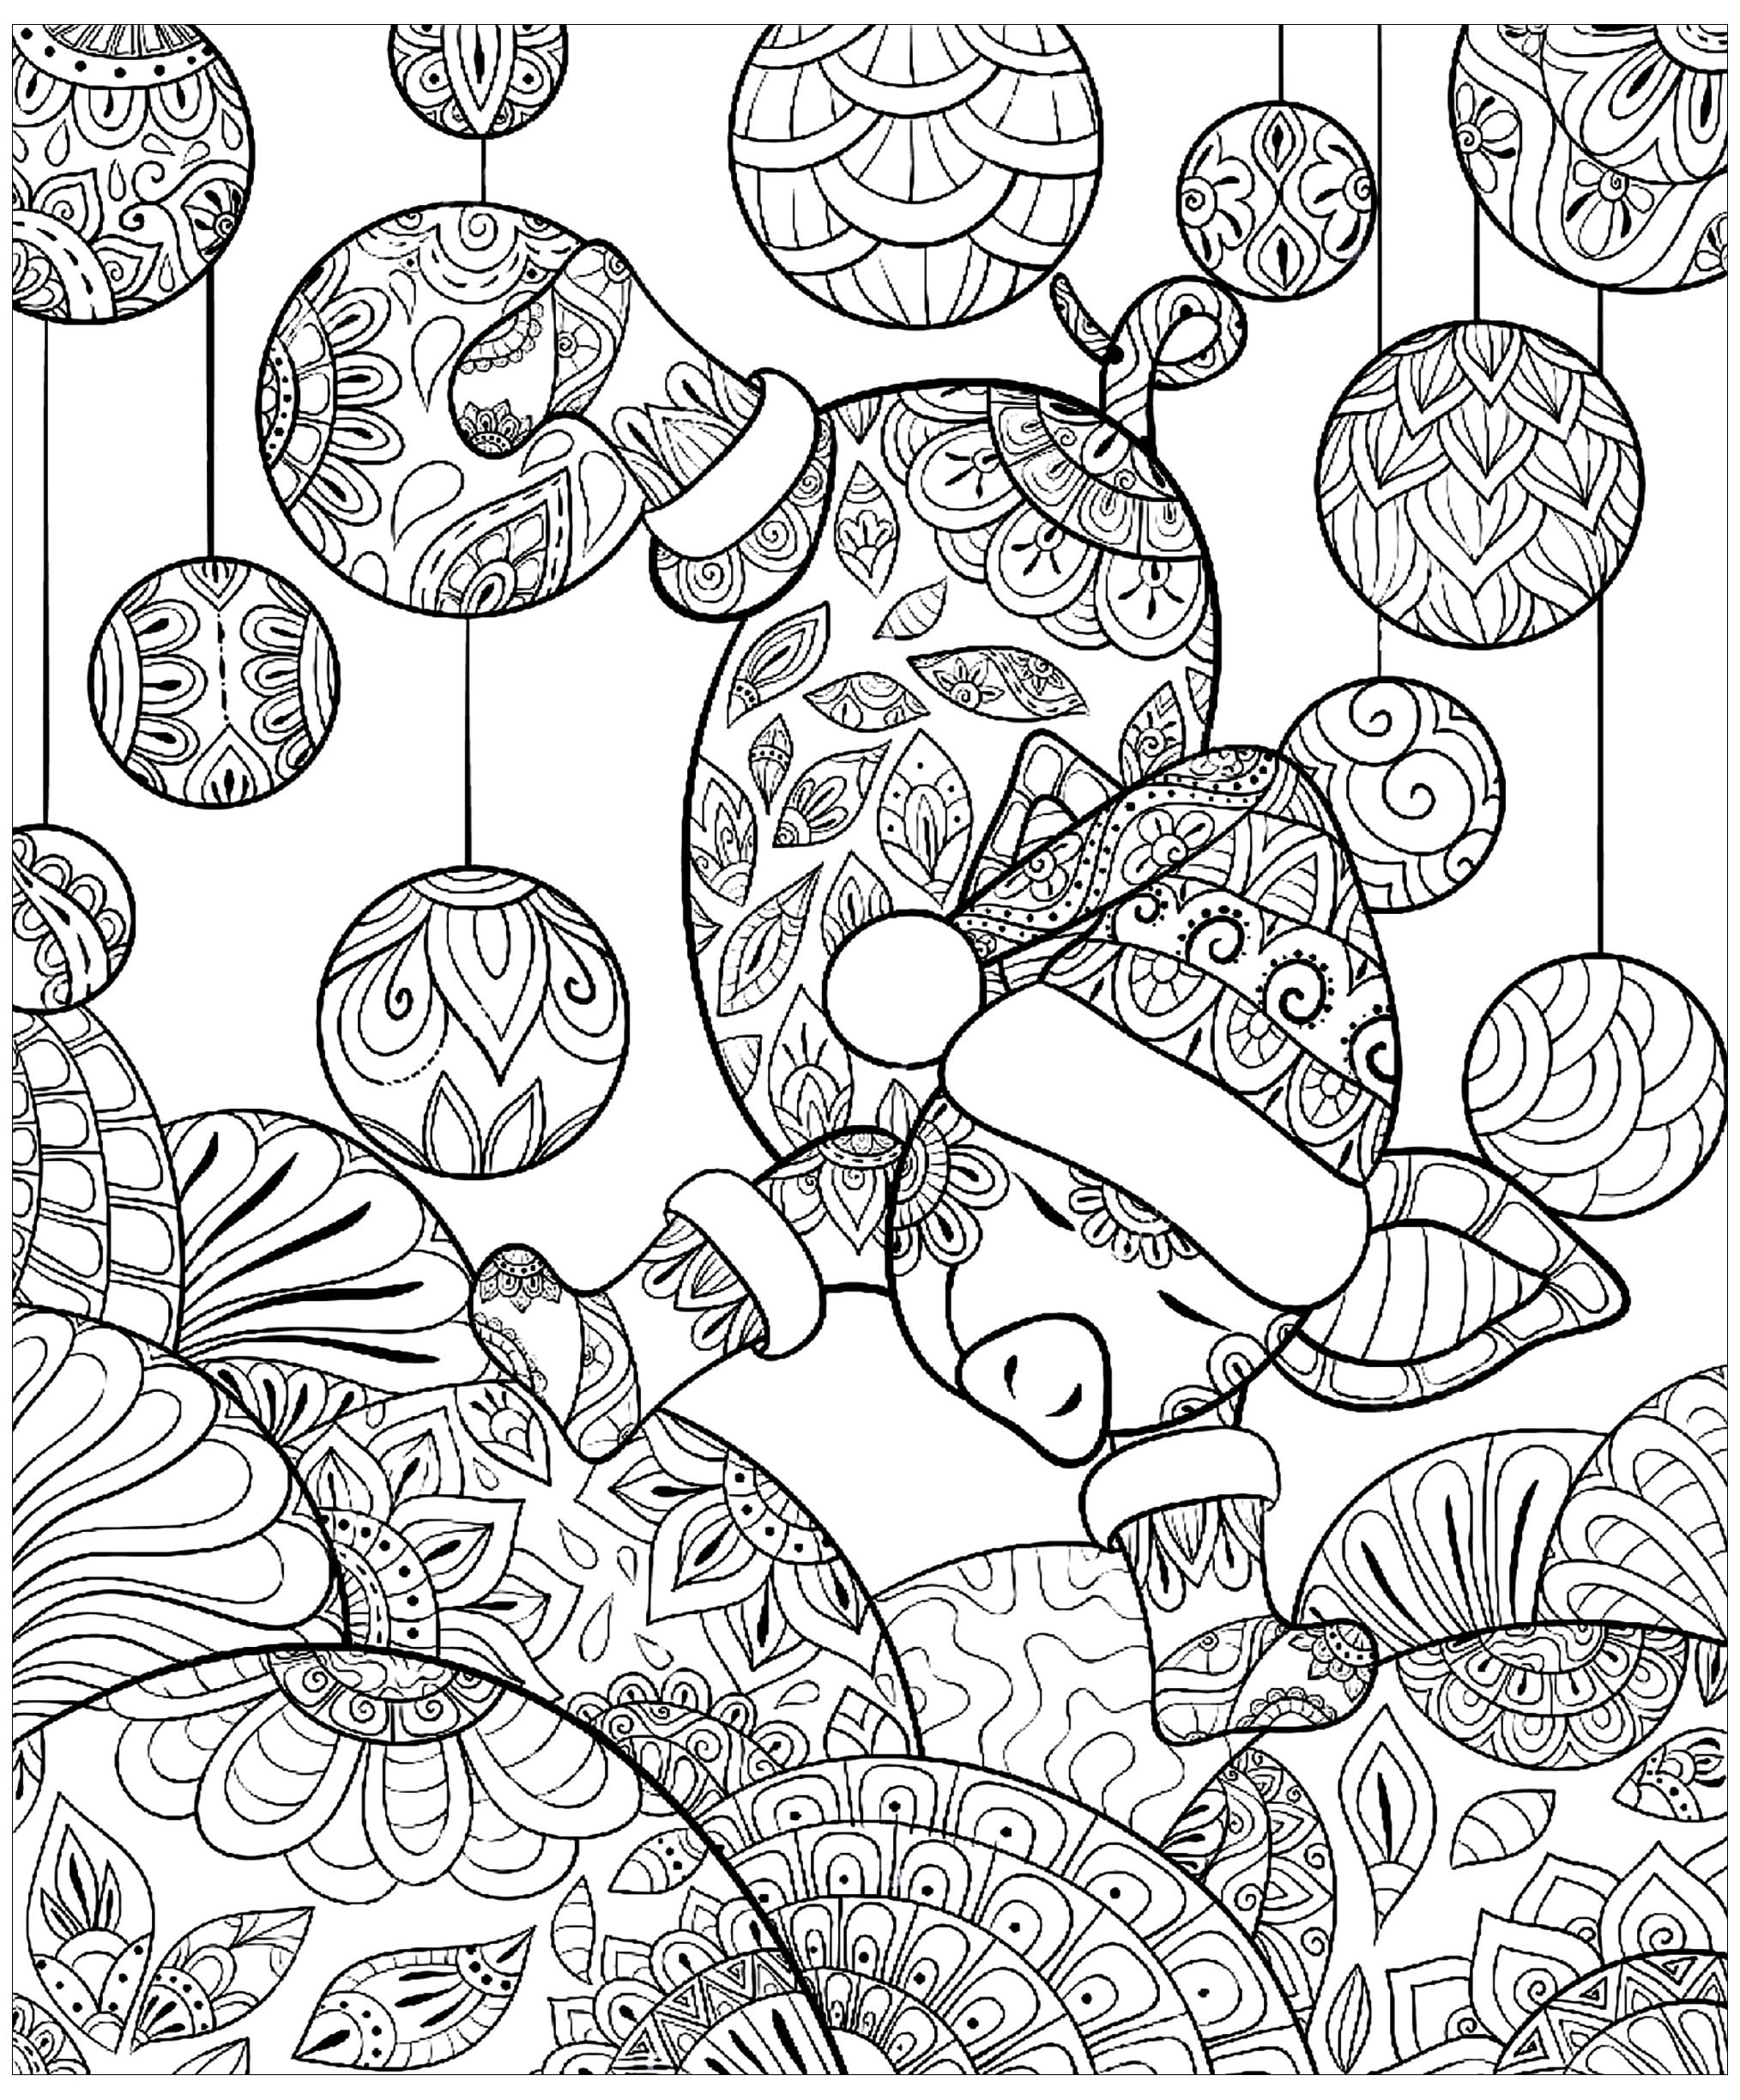 Desenhos fáceis para colorir para crianças de Porcos, Artista : Nonuzza   Fonte : shutterstock